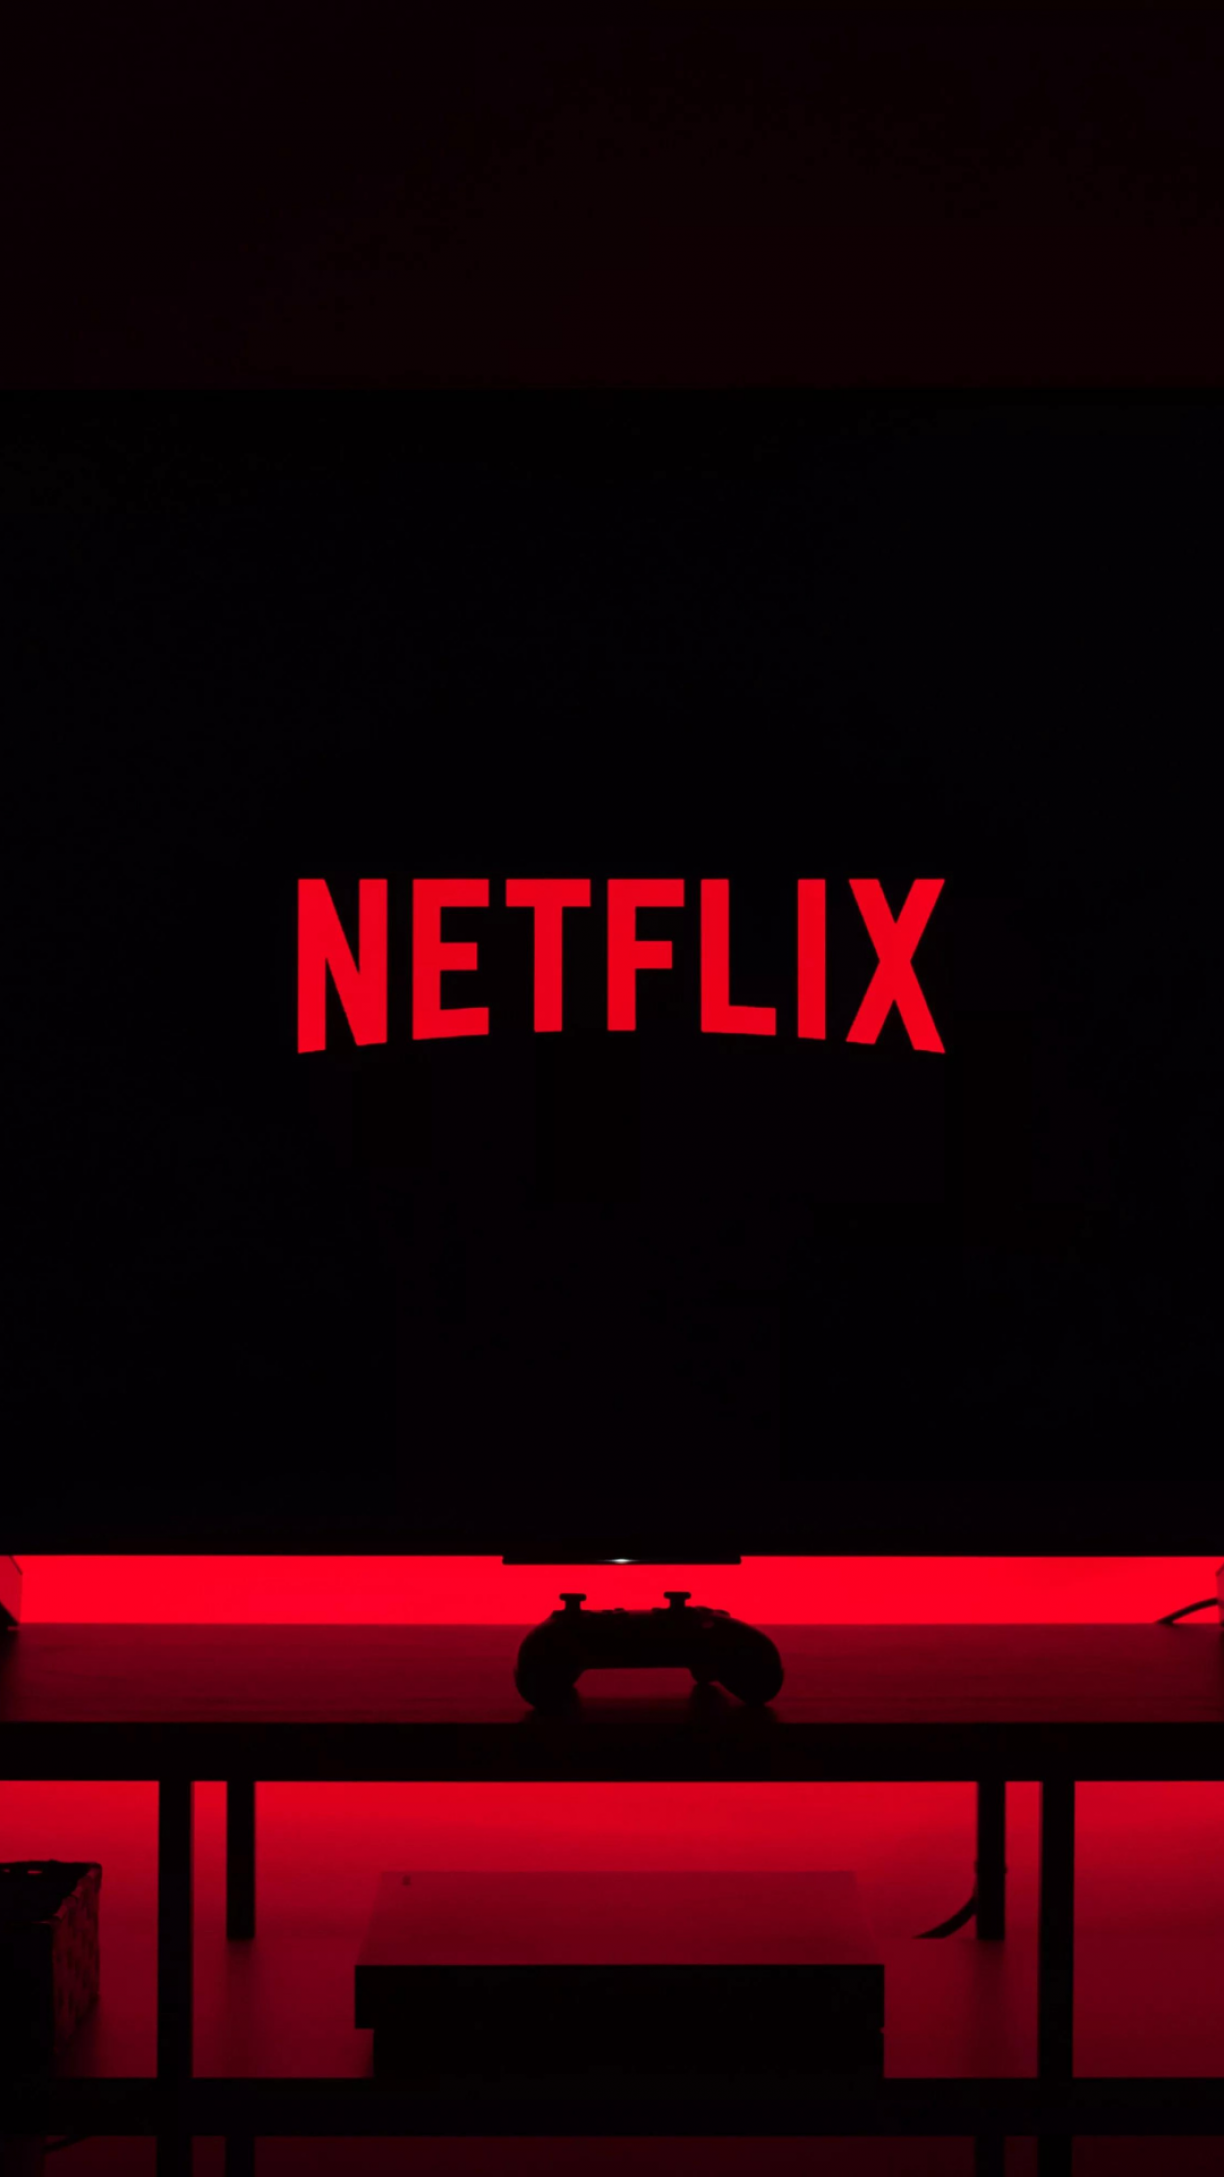 Netflix anuncia redução global no preço das assinaturas